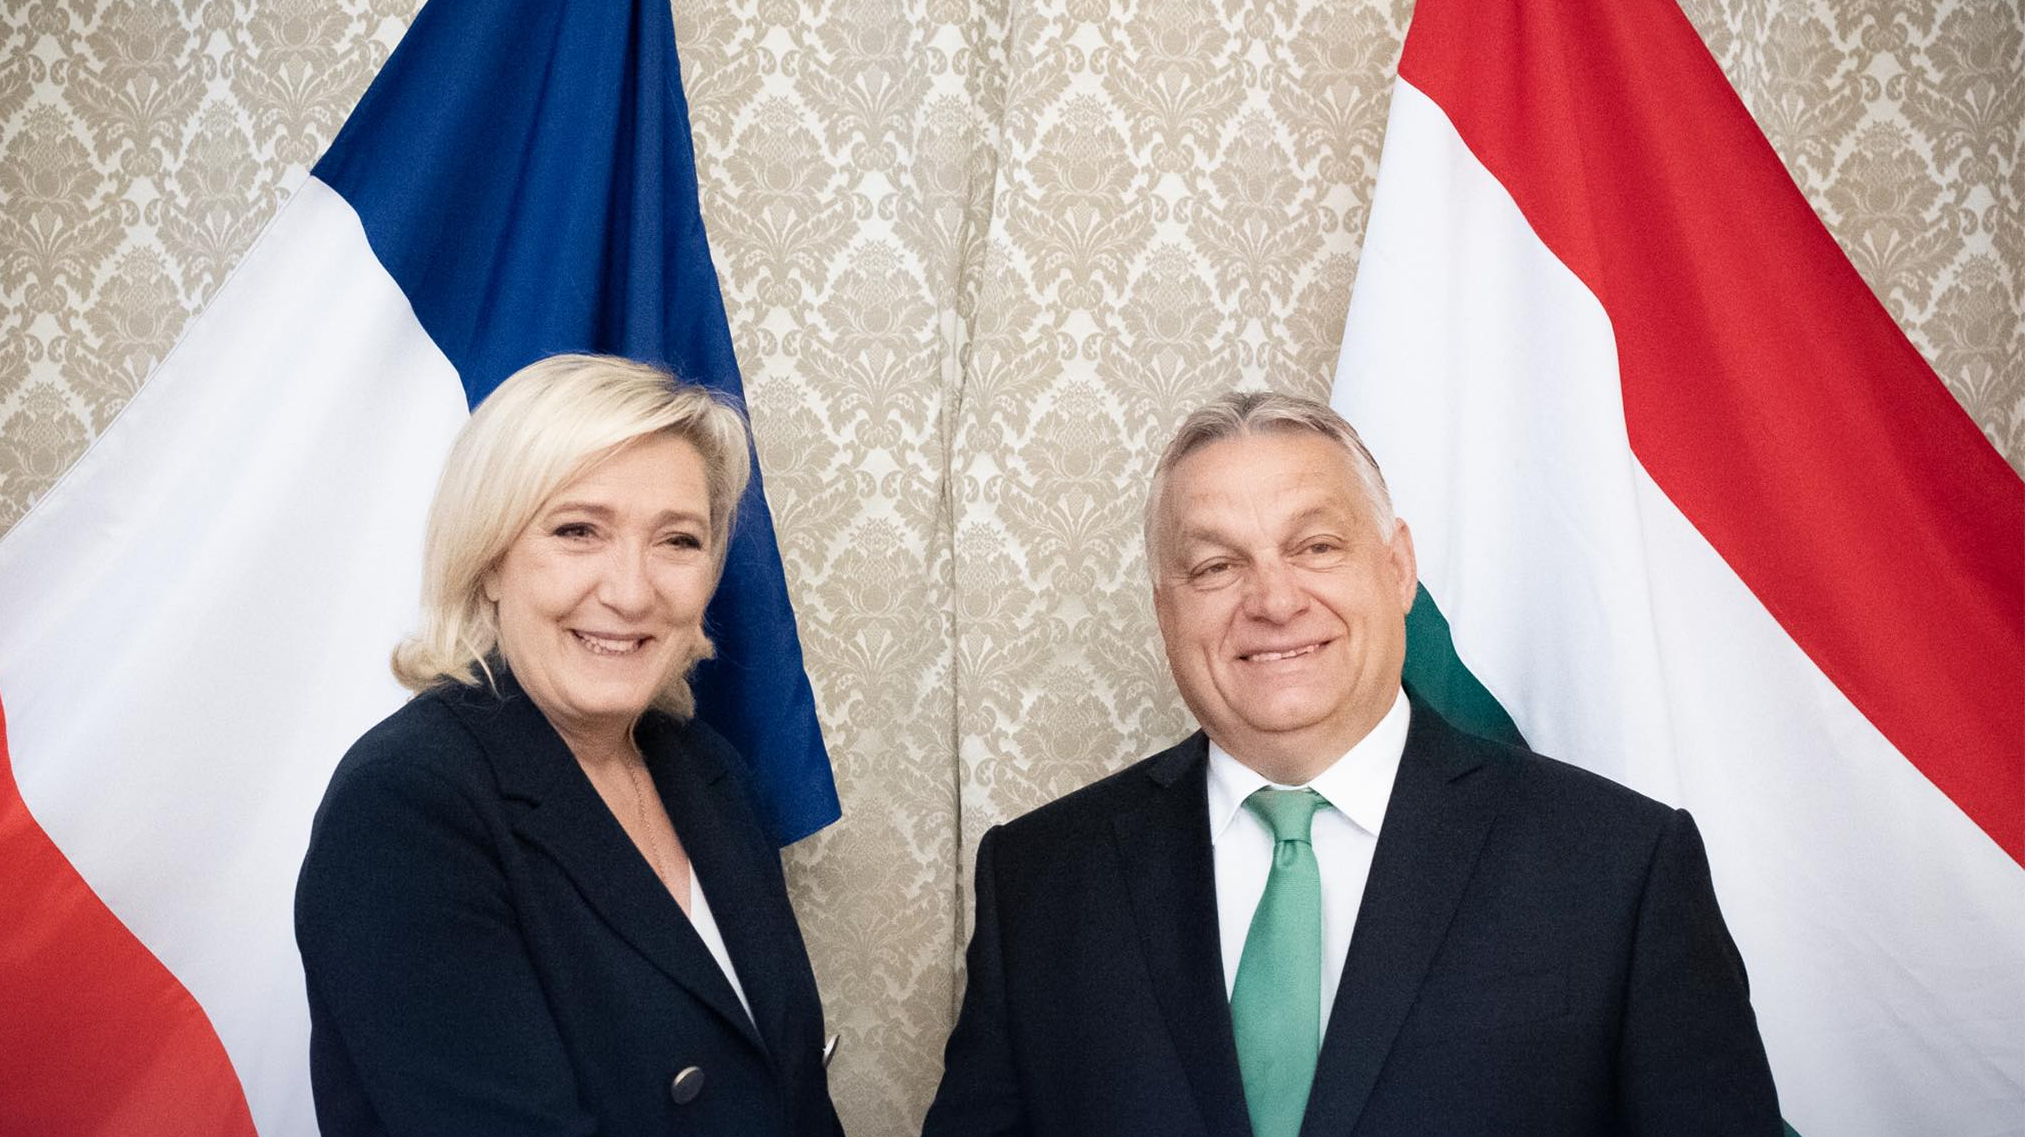 Orbán parancsba adta, Mészáros ellenezte: kiderült a két vezető konfliktusa